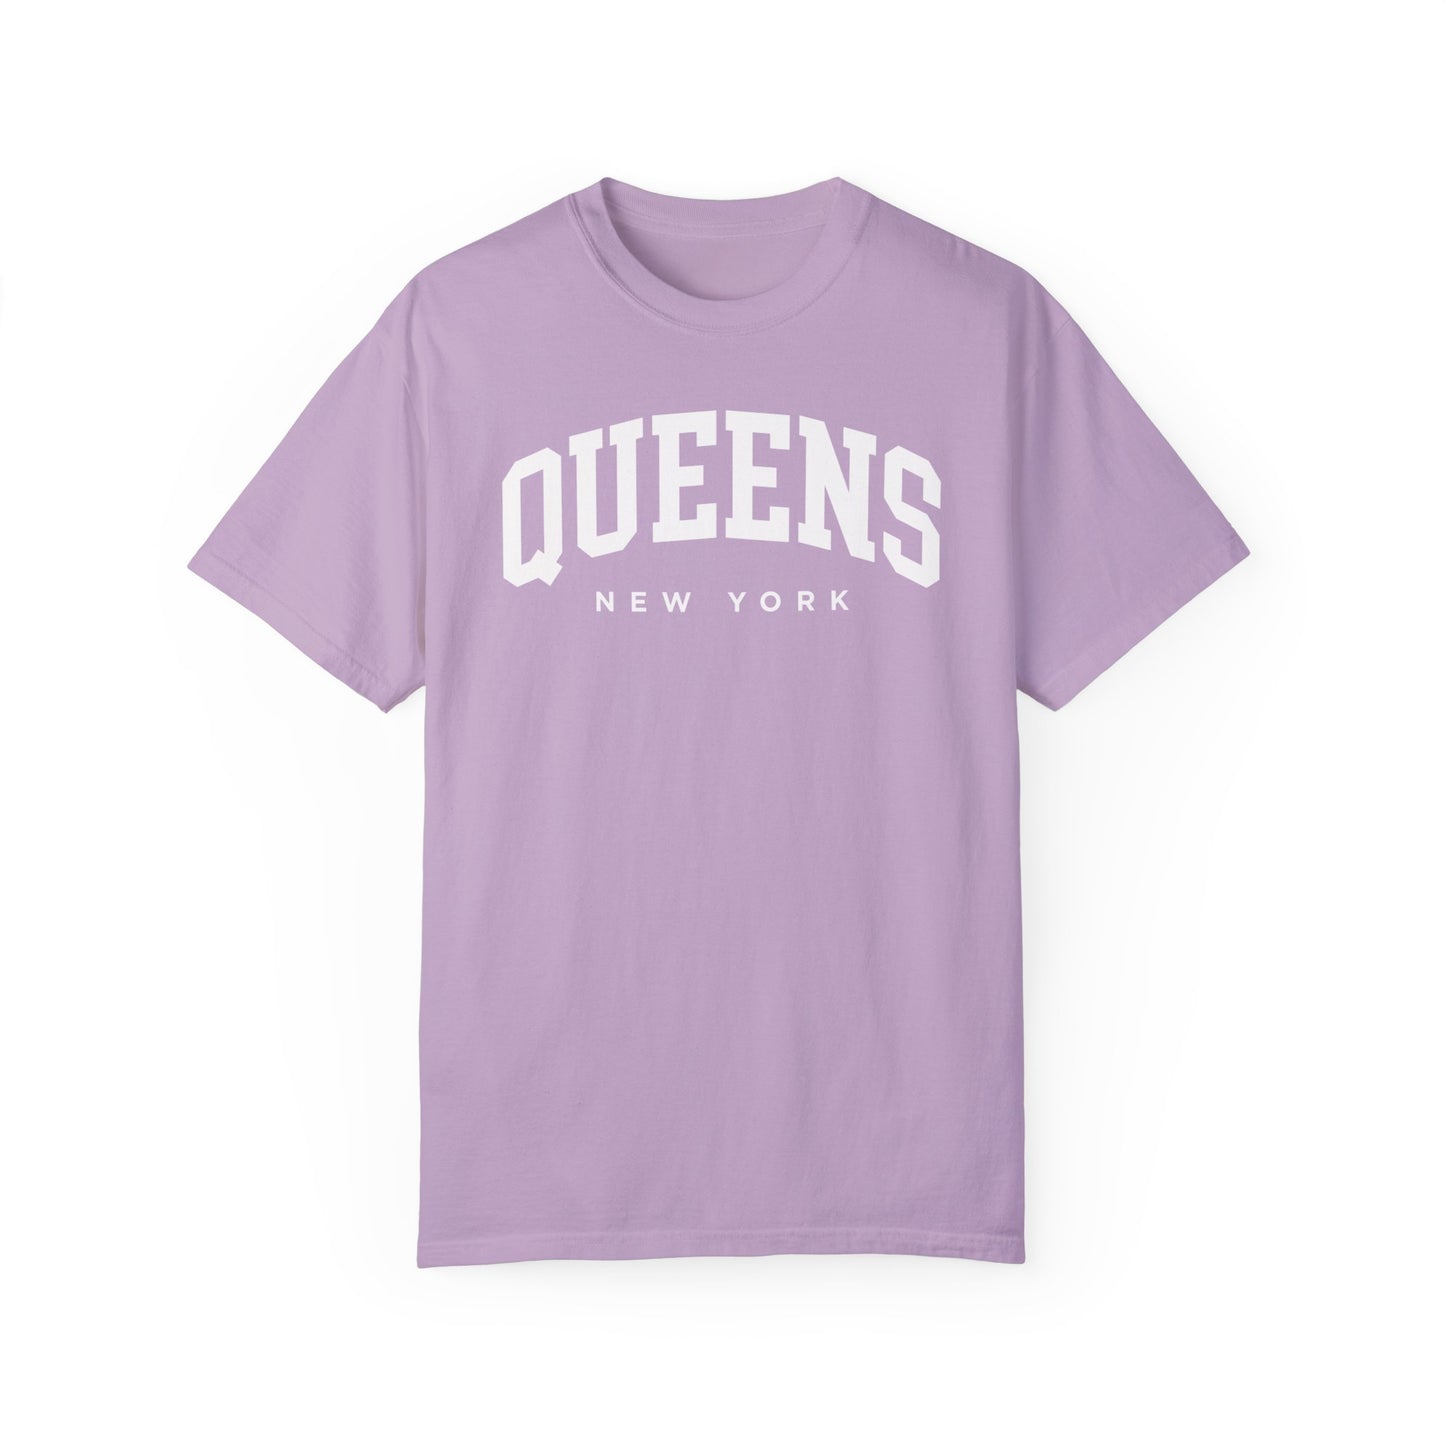 Queens New York Comfort Colors® Tee